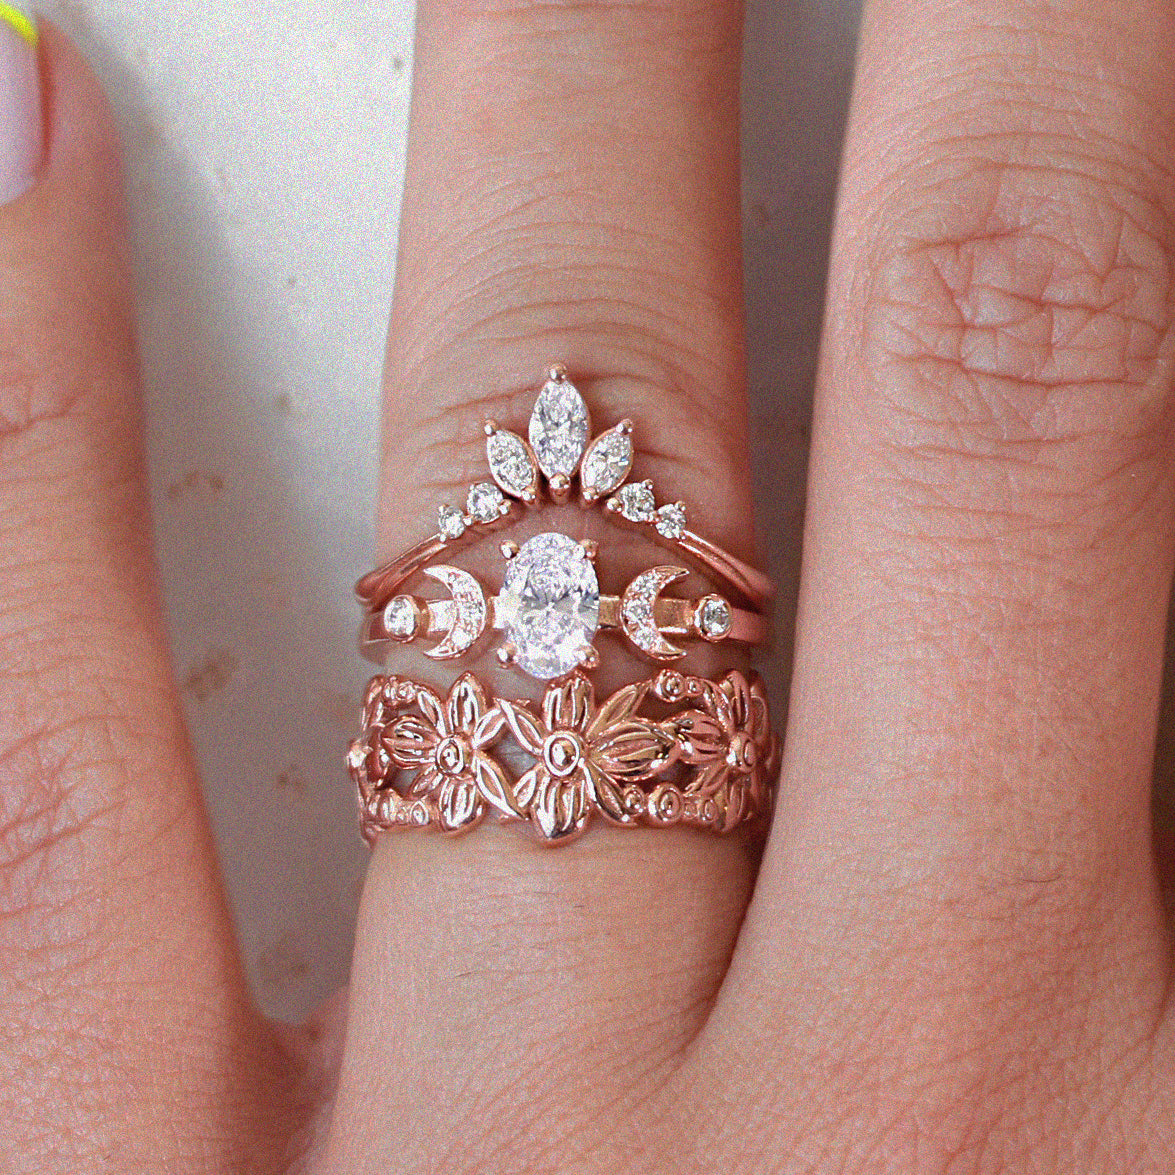 Unique Chevron Marquise Diamond Ring - "Danielle" ♥